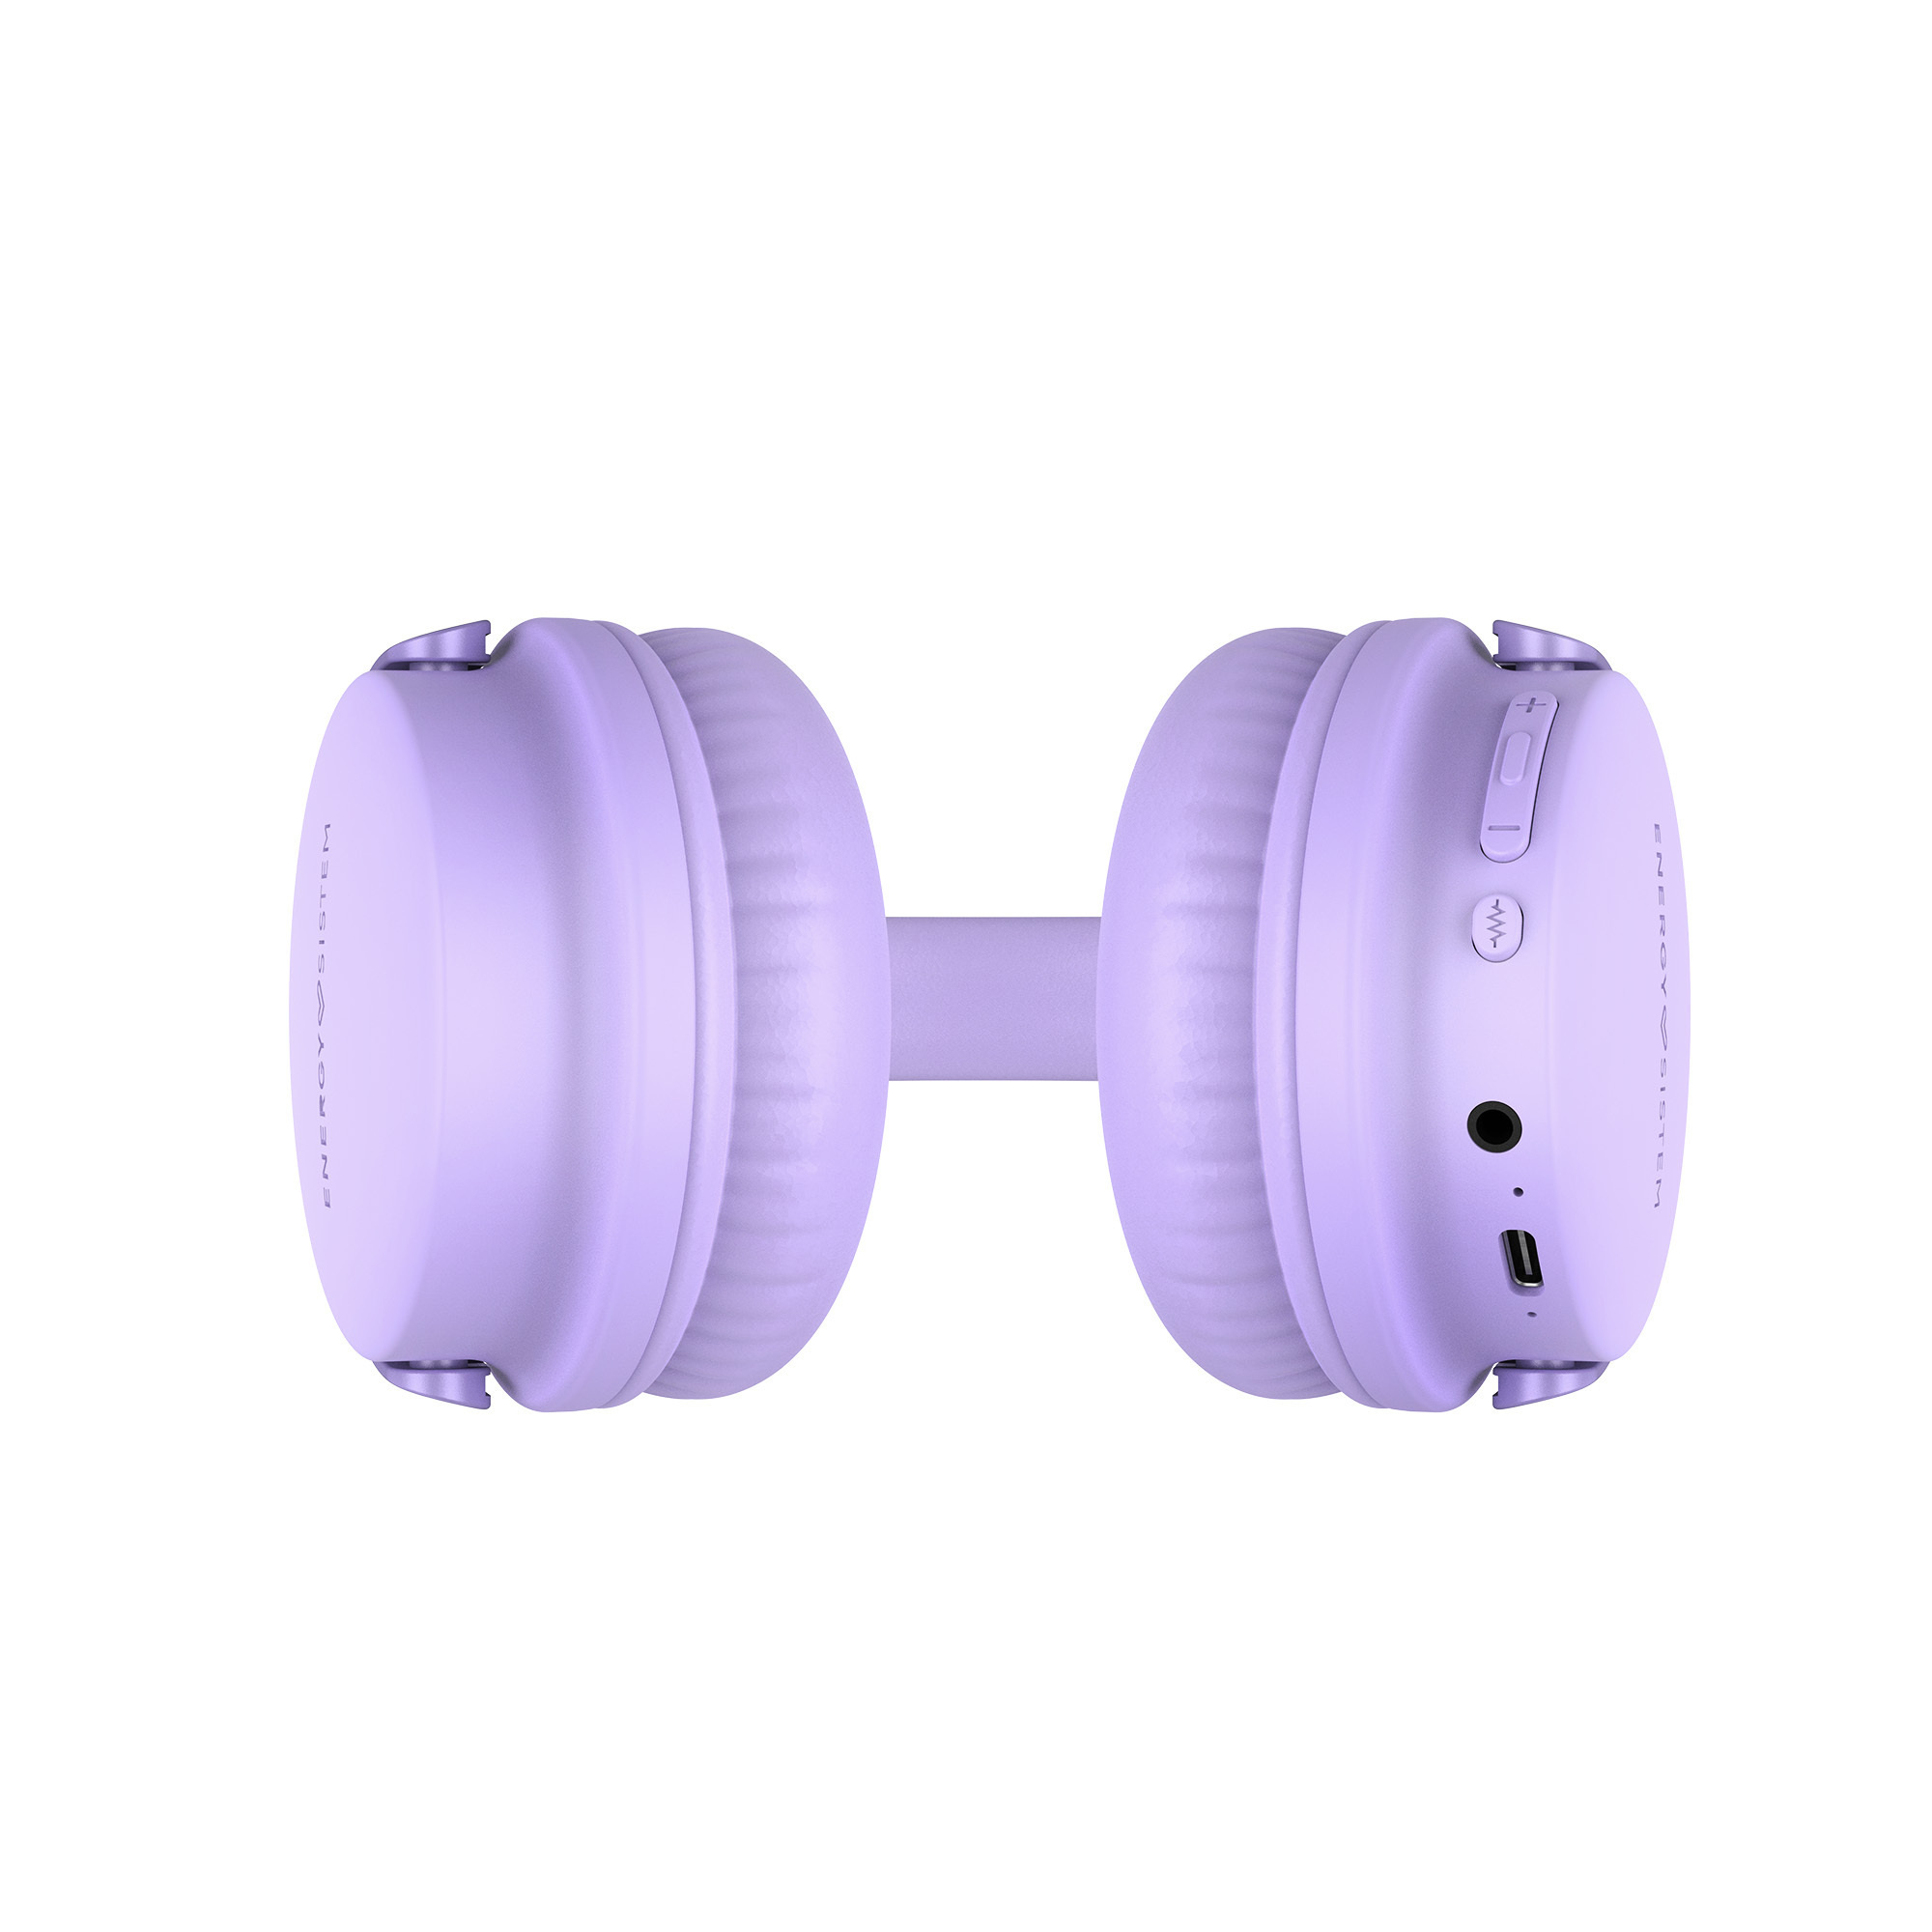 Auriculares inalámbricos con high-quality voice calls